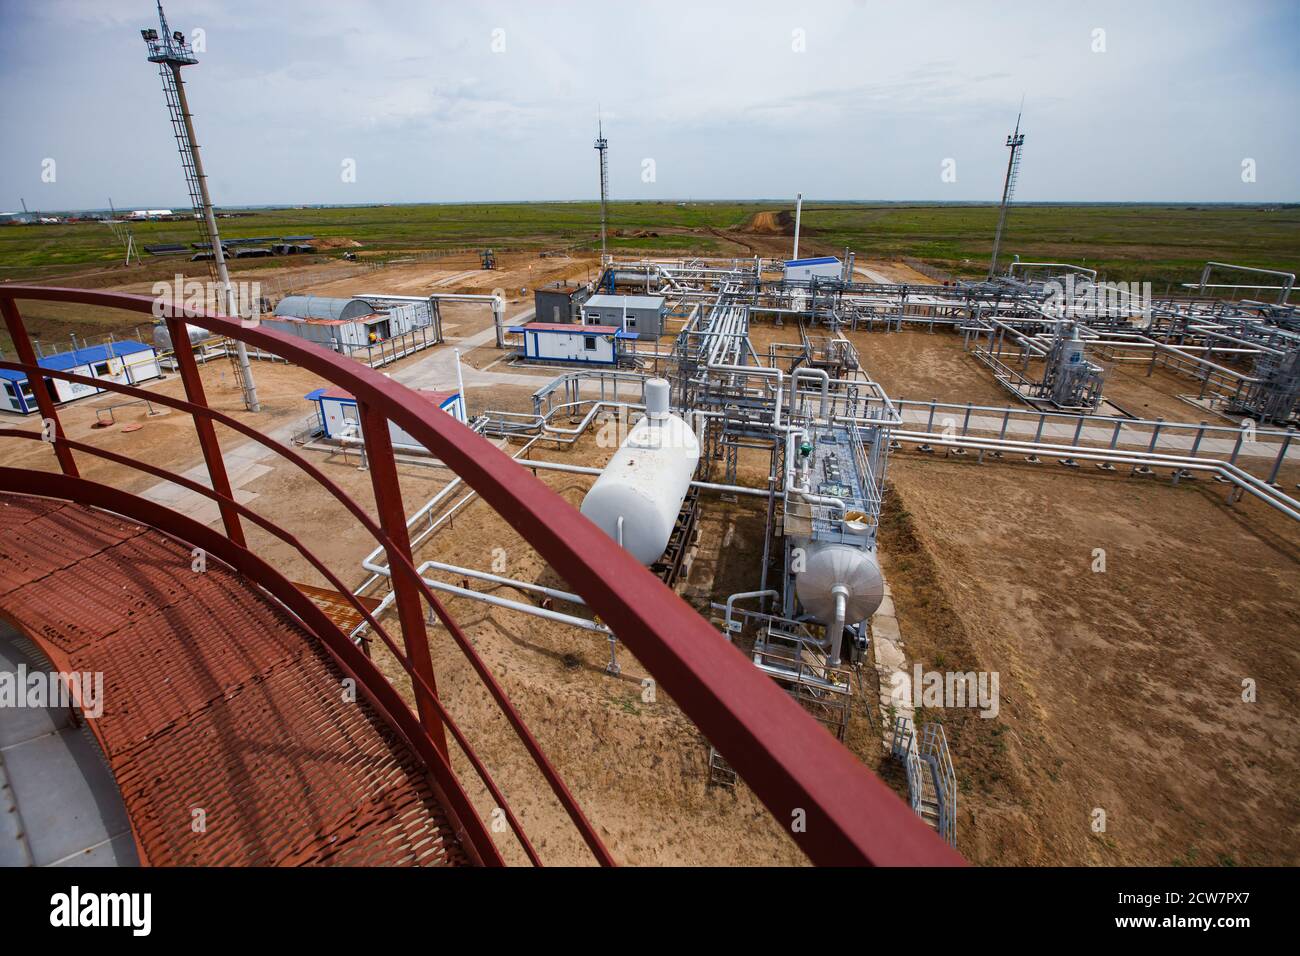 Gisement de pétrole de Zhaik-Munai, Kazakhstan. Usine de raffinage de pétrole. Vue de la colonne de raffinage de pétrole. Échangeurs thermiques, mâts, pipelines dans les sables. Ciel bleu Banque D'Images